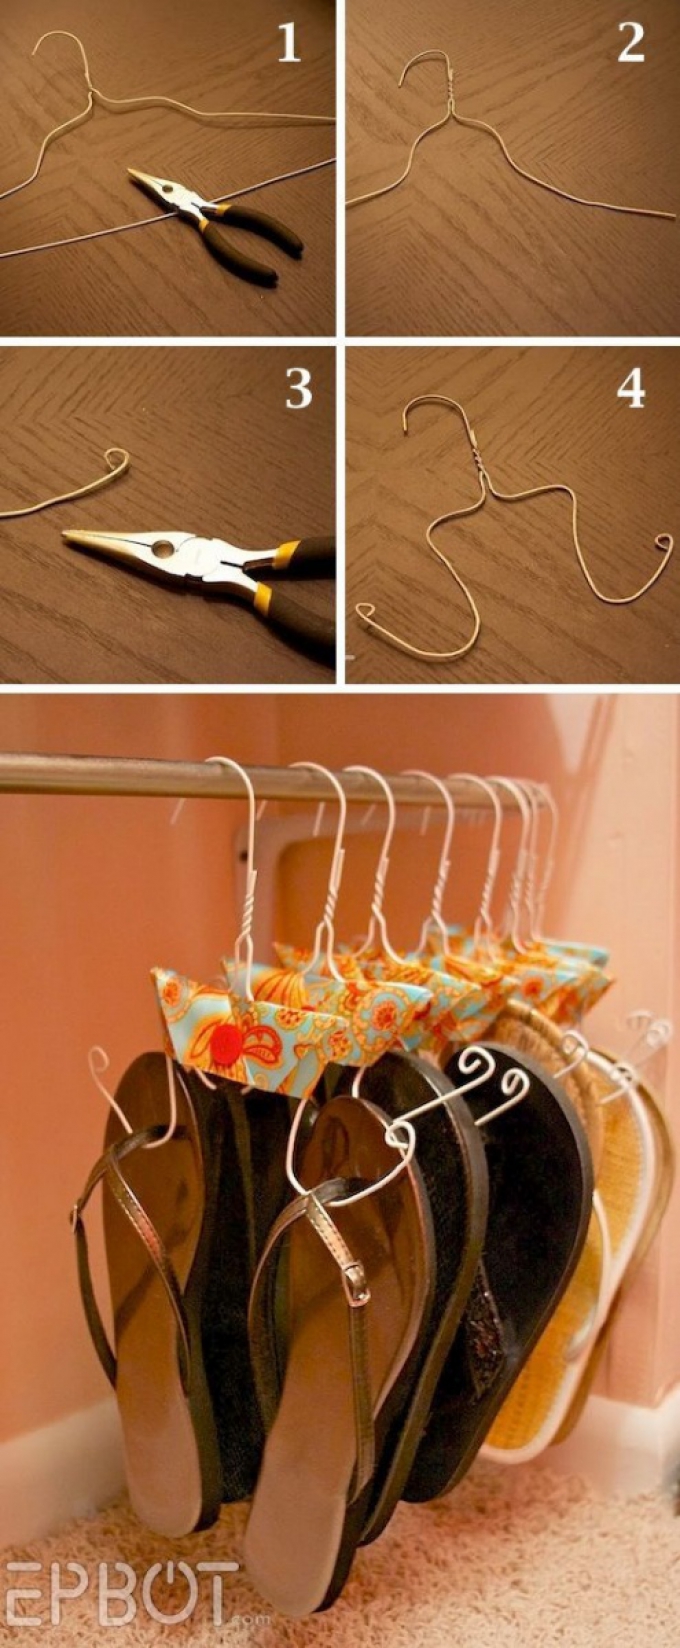 flipflop storage hack coat hanger